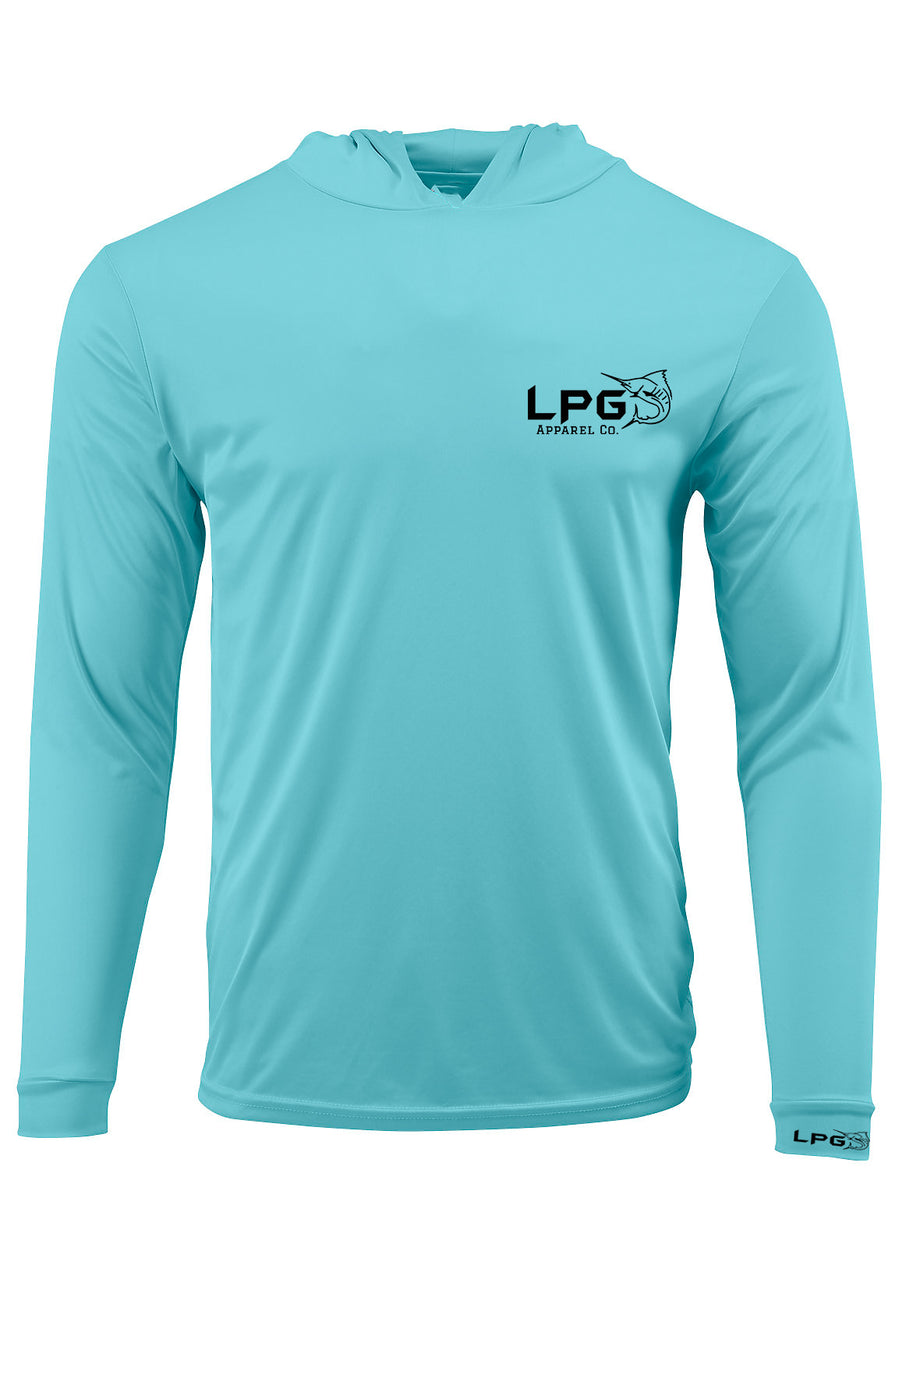 LPG Apparel Co. Performance Fishing Hoodie UPF 50+ Dri-FIT UV Protection Men & Women Long Sleeve T-Shirt Seafoam / XL I Lobo Lures